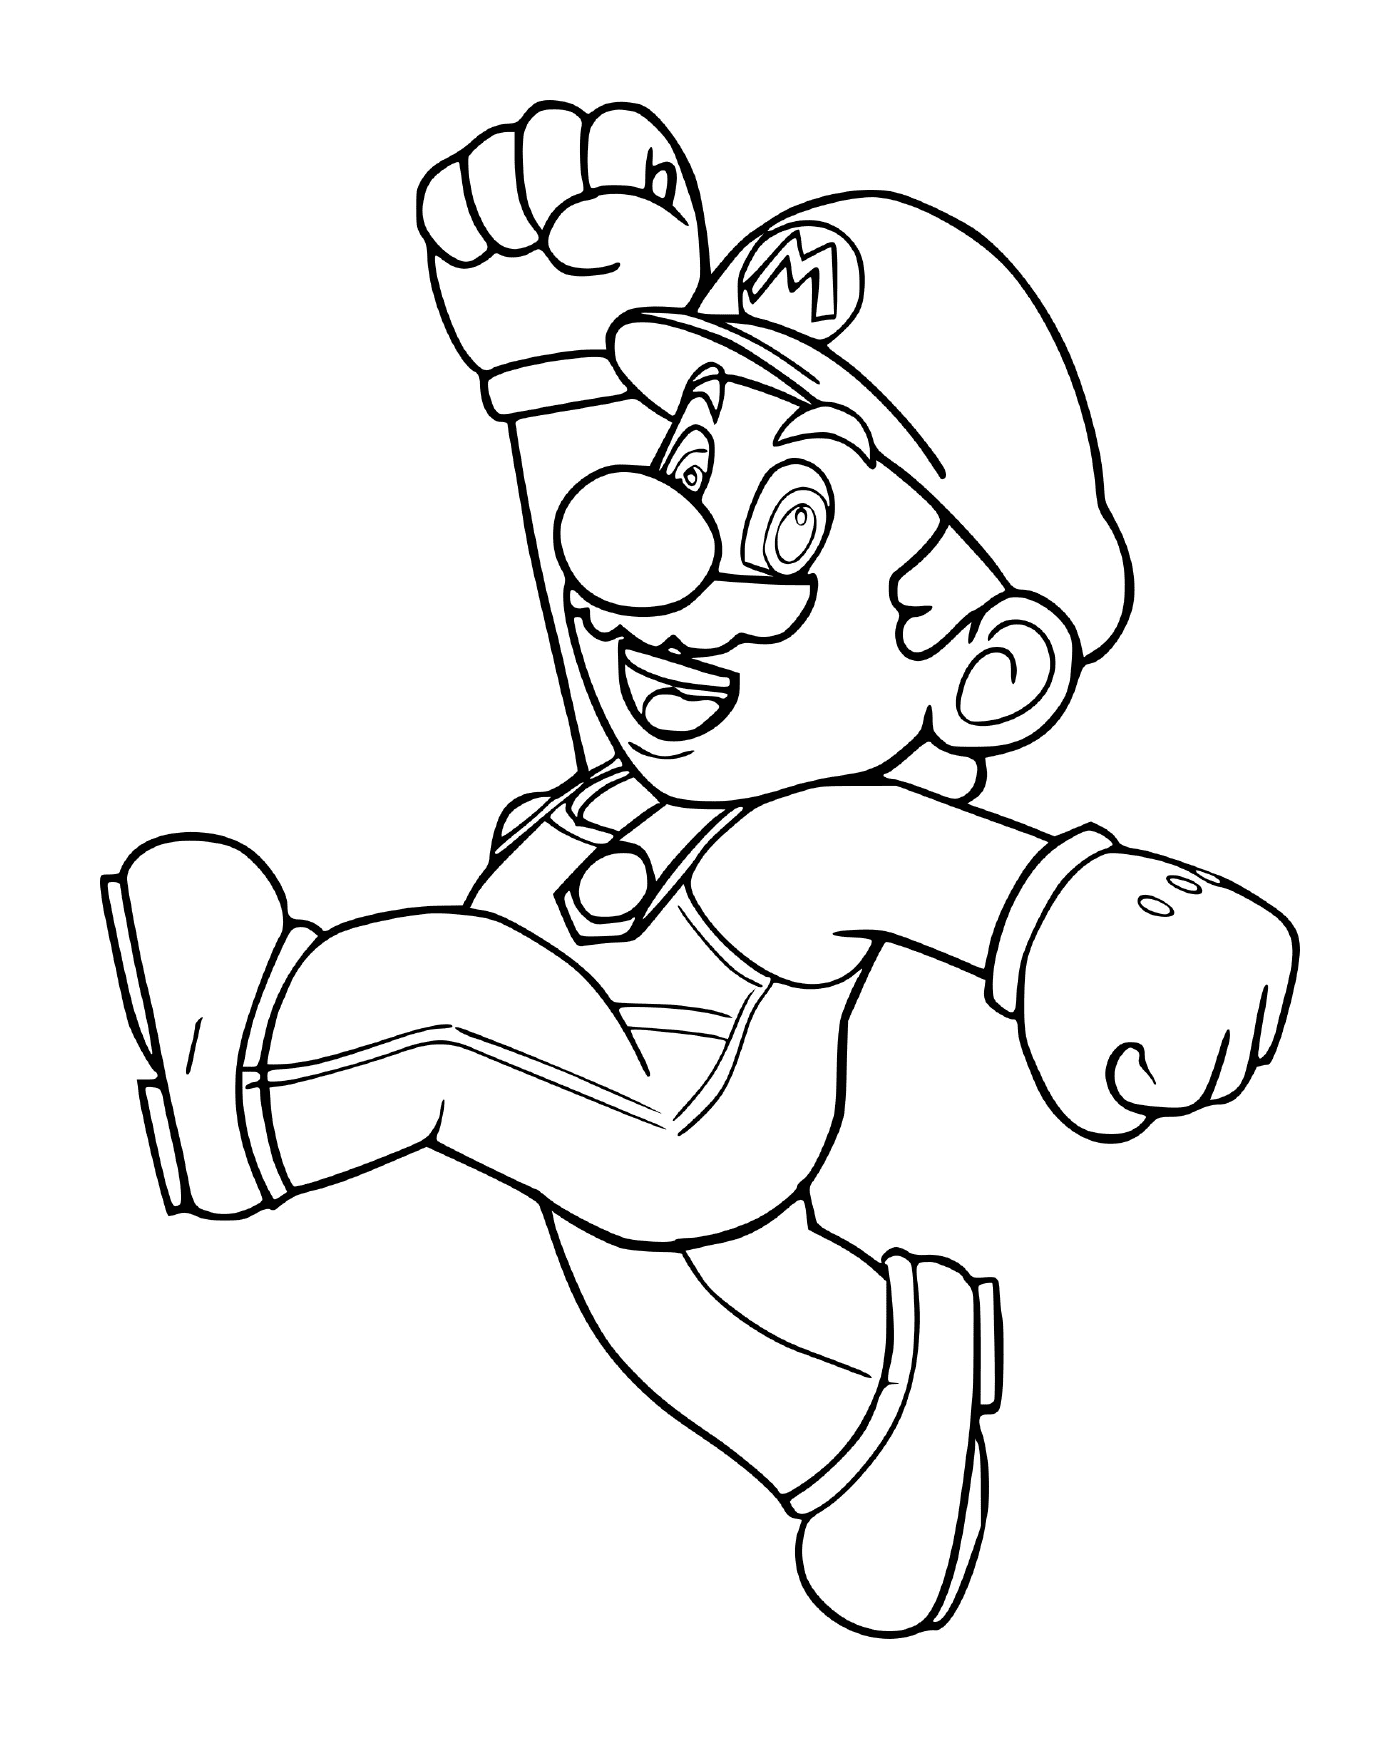  Mario Bros original, um homem correndo 